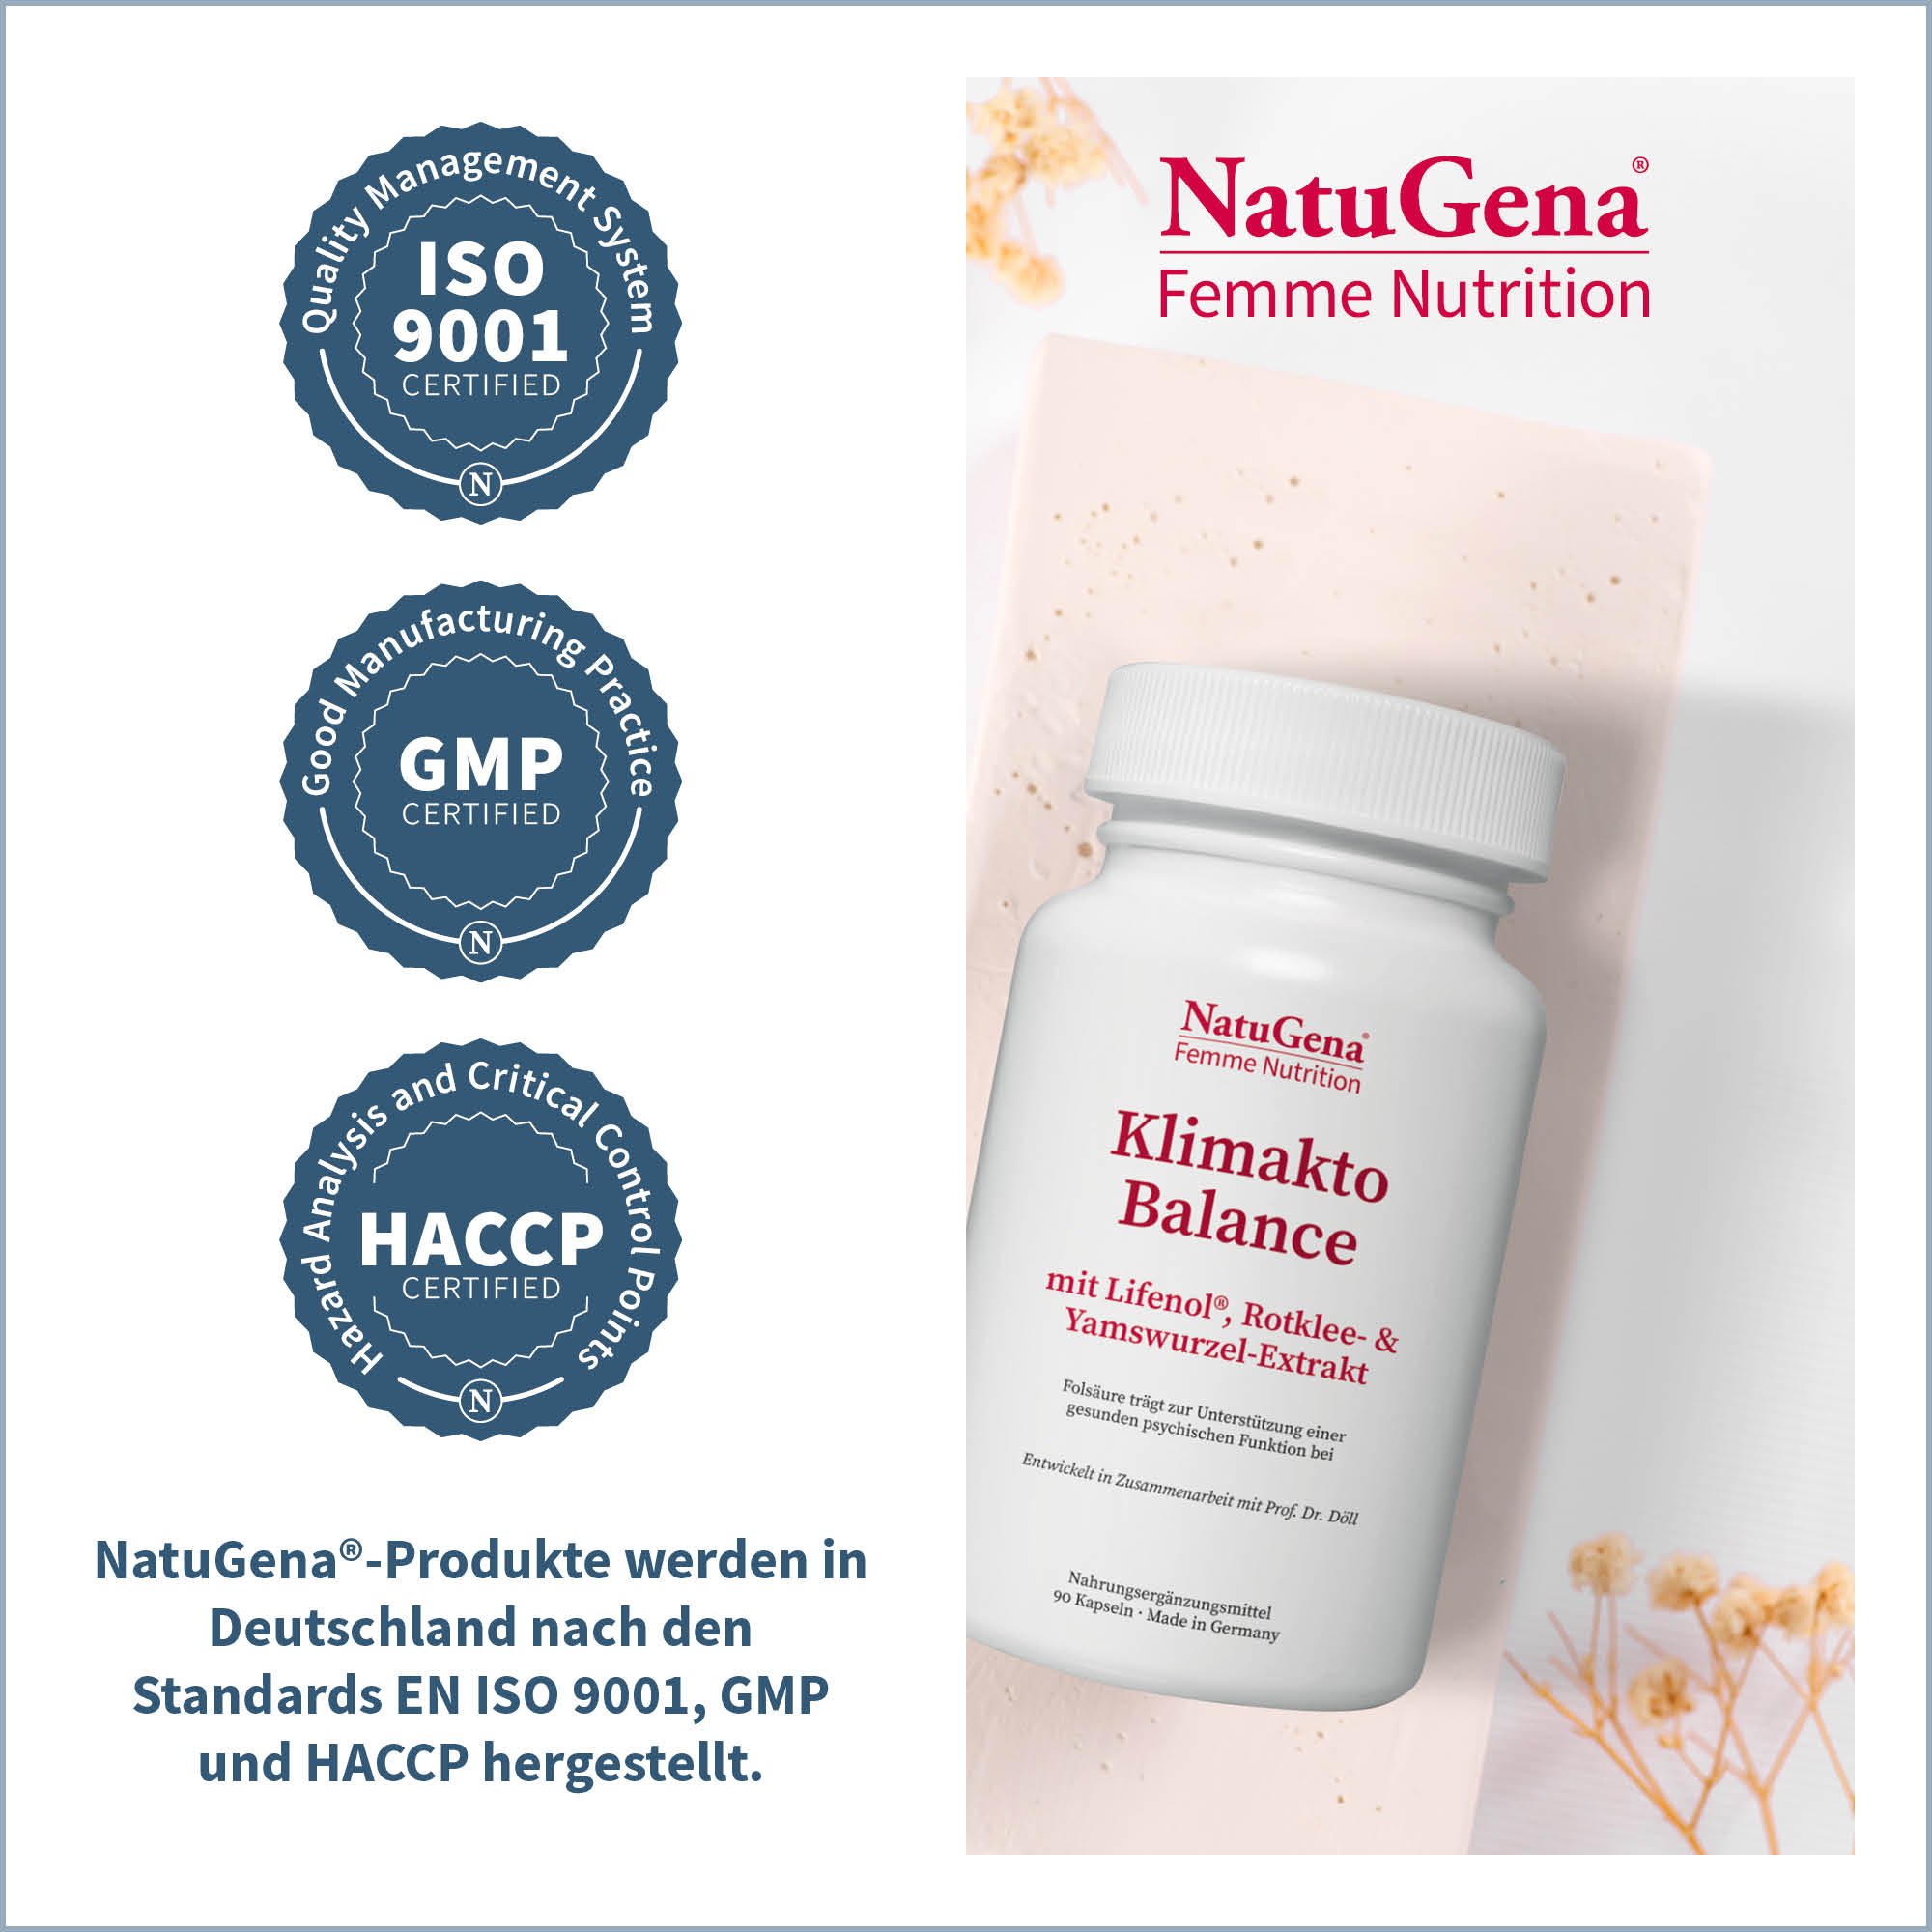 KlimaktoBalance von NatuGena Femme Nutrition - Zertifizierungen